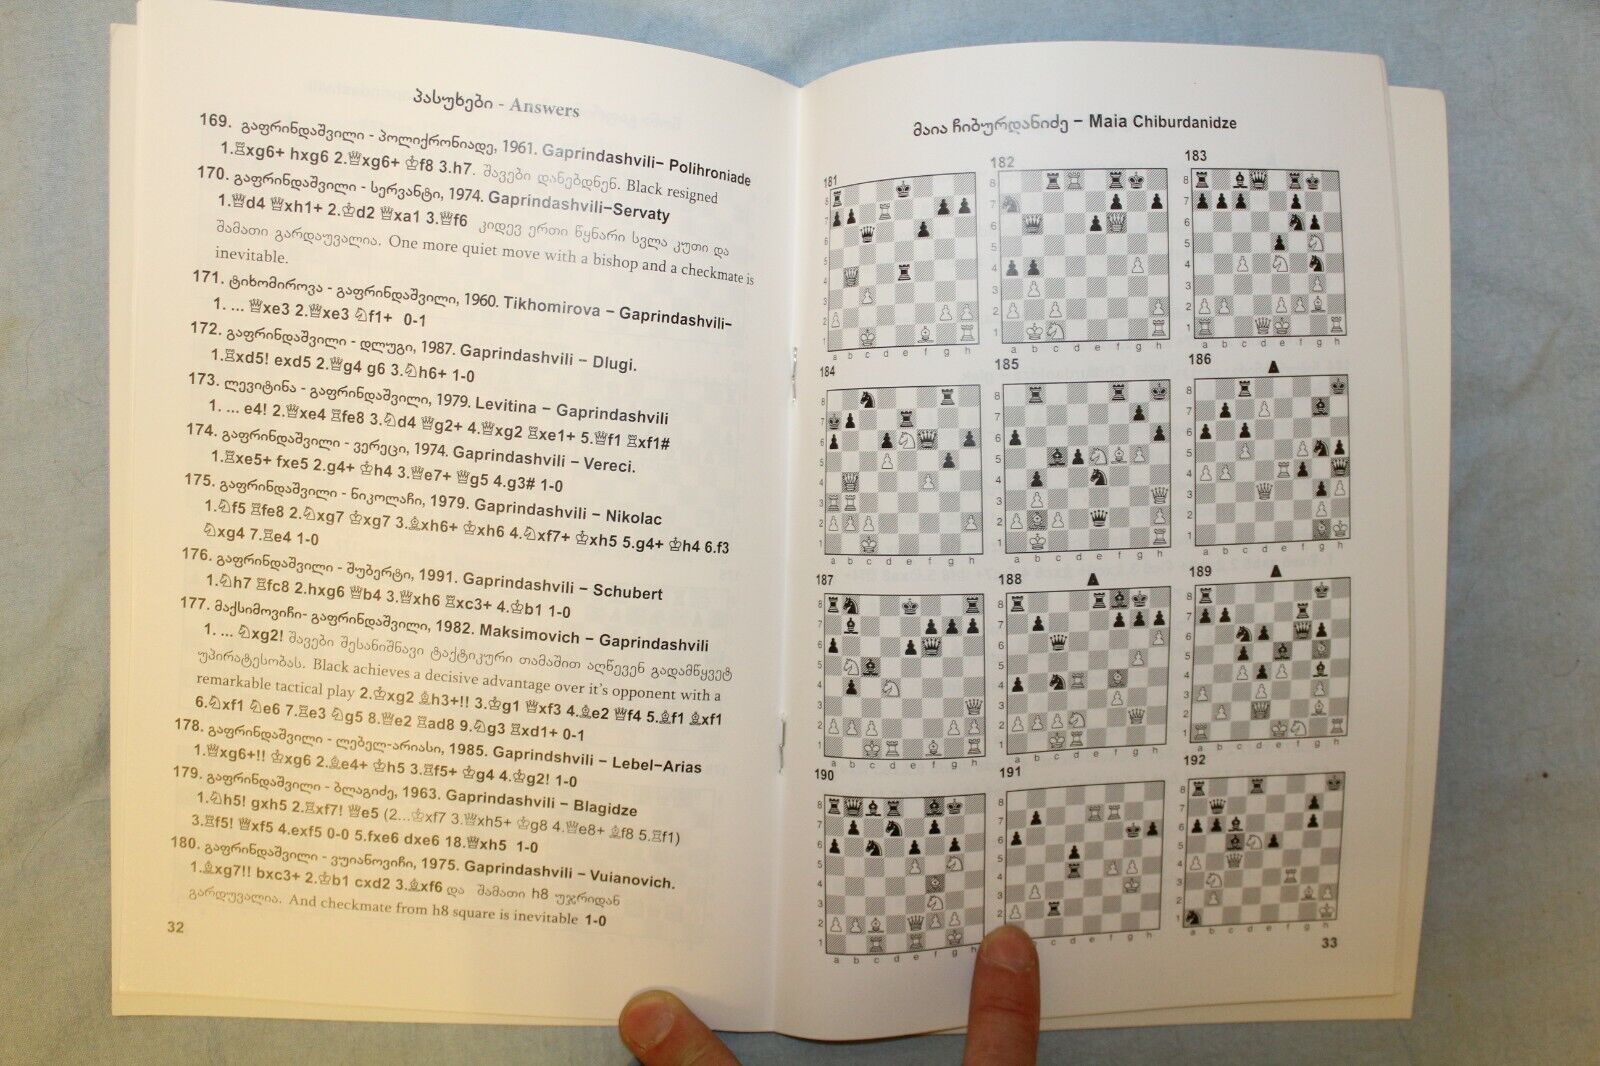 10713.3 English Georgian Chess Books: David Gurgenidze. Chess Practicum 2016